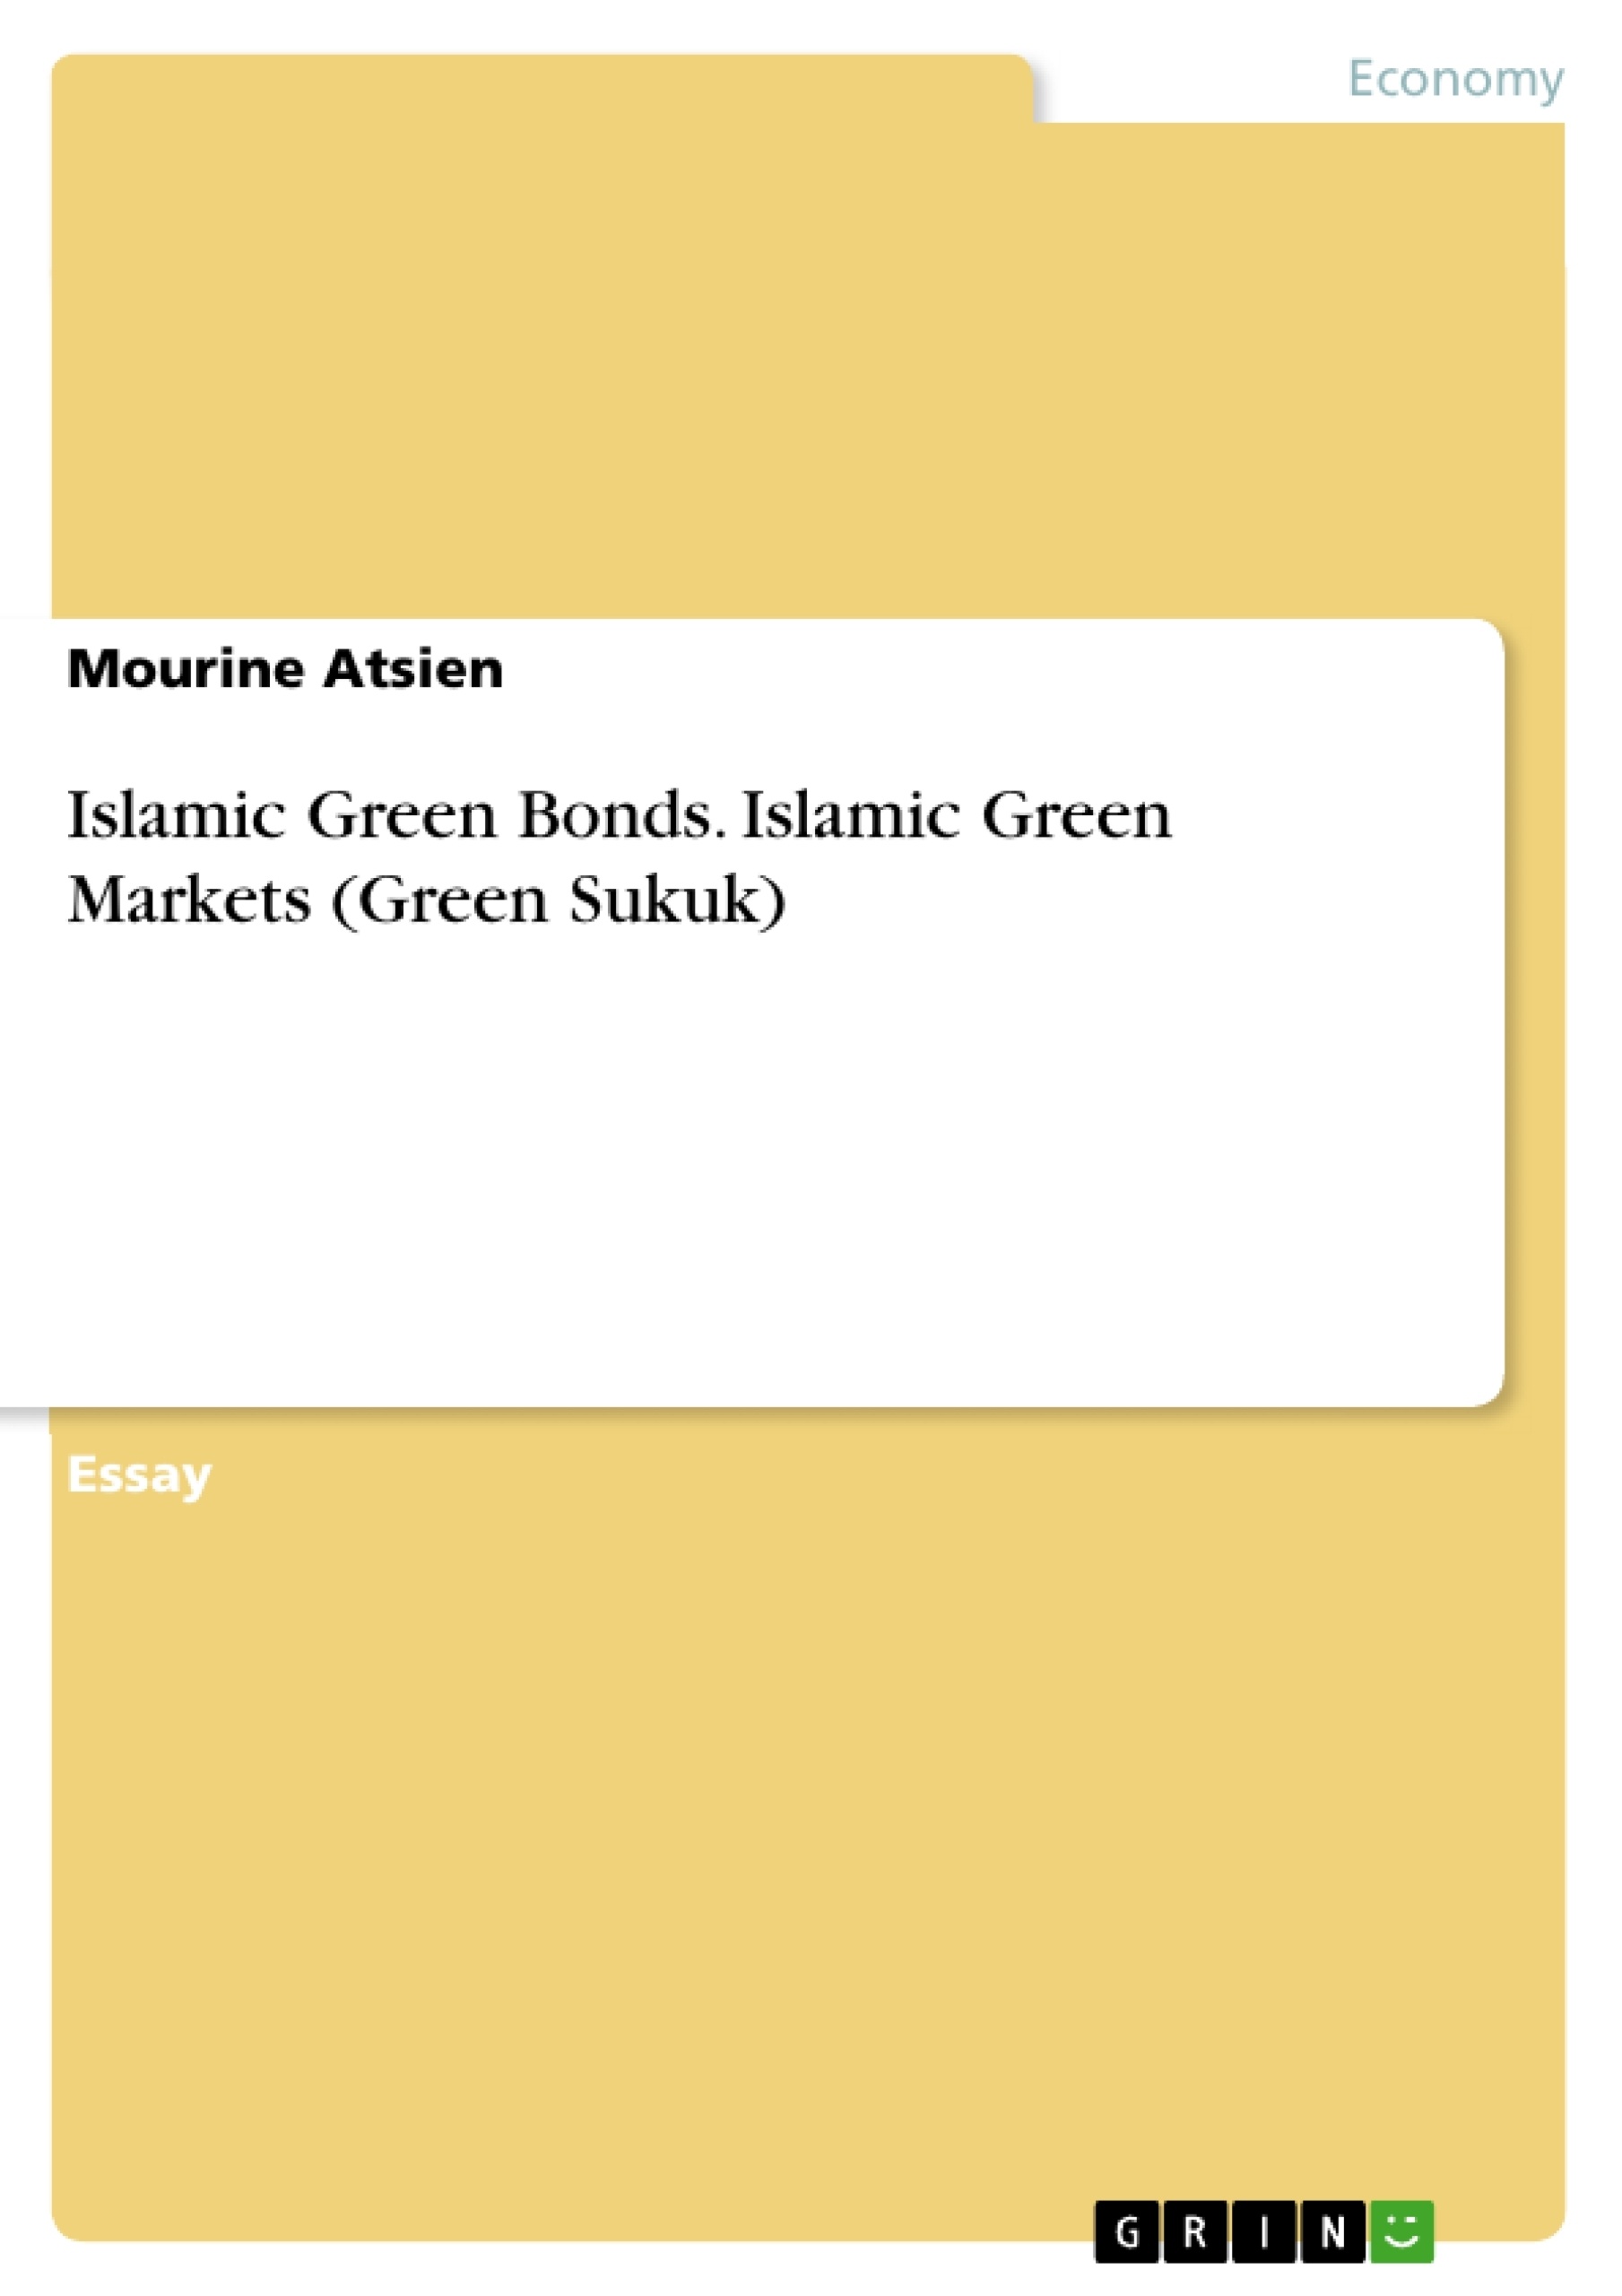 Title: Islamic Green Bonds. Islamic Green Markets (Green Sukuk)